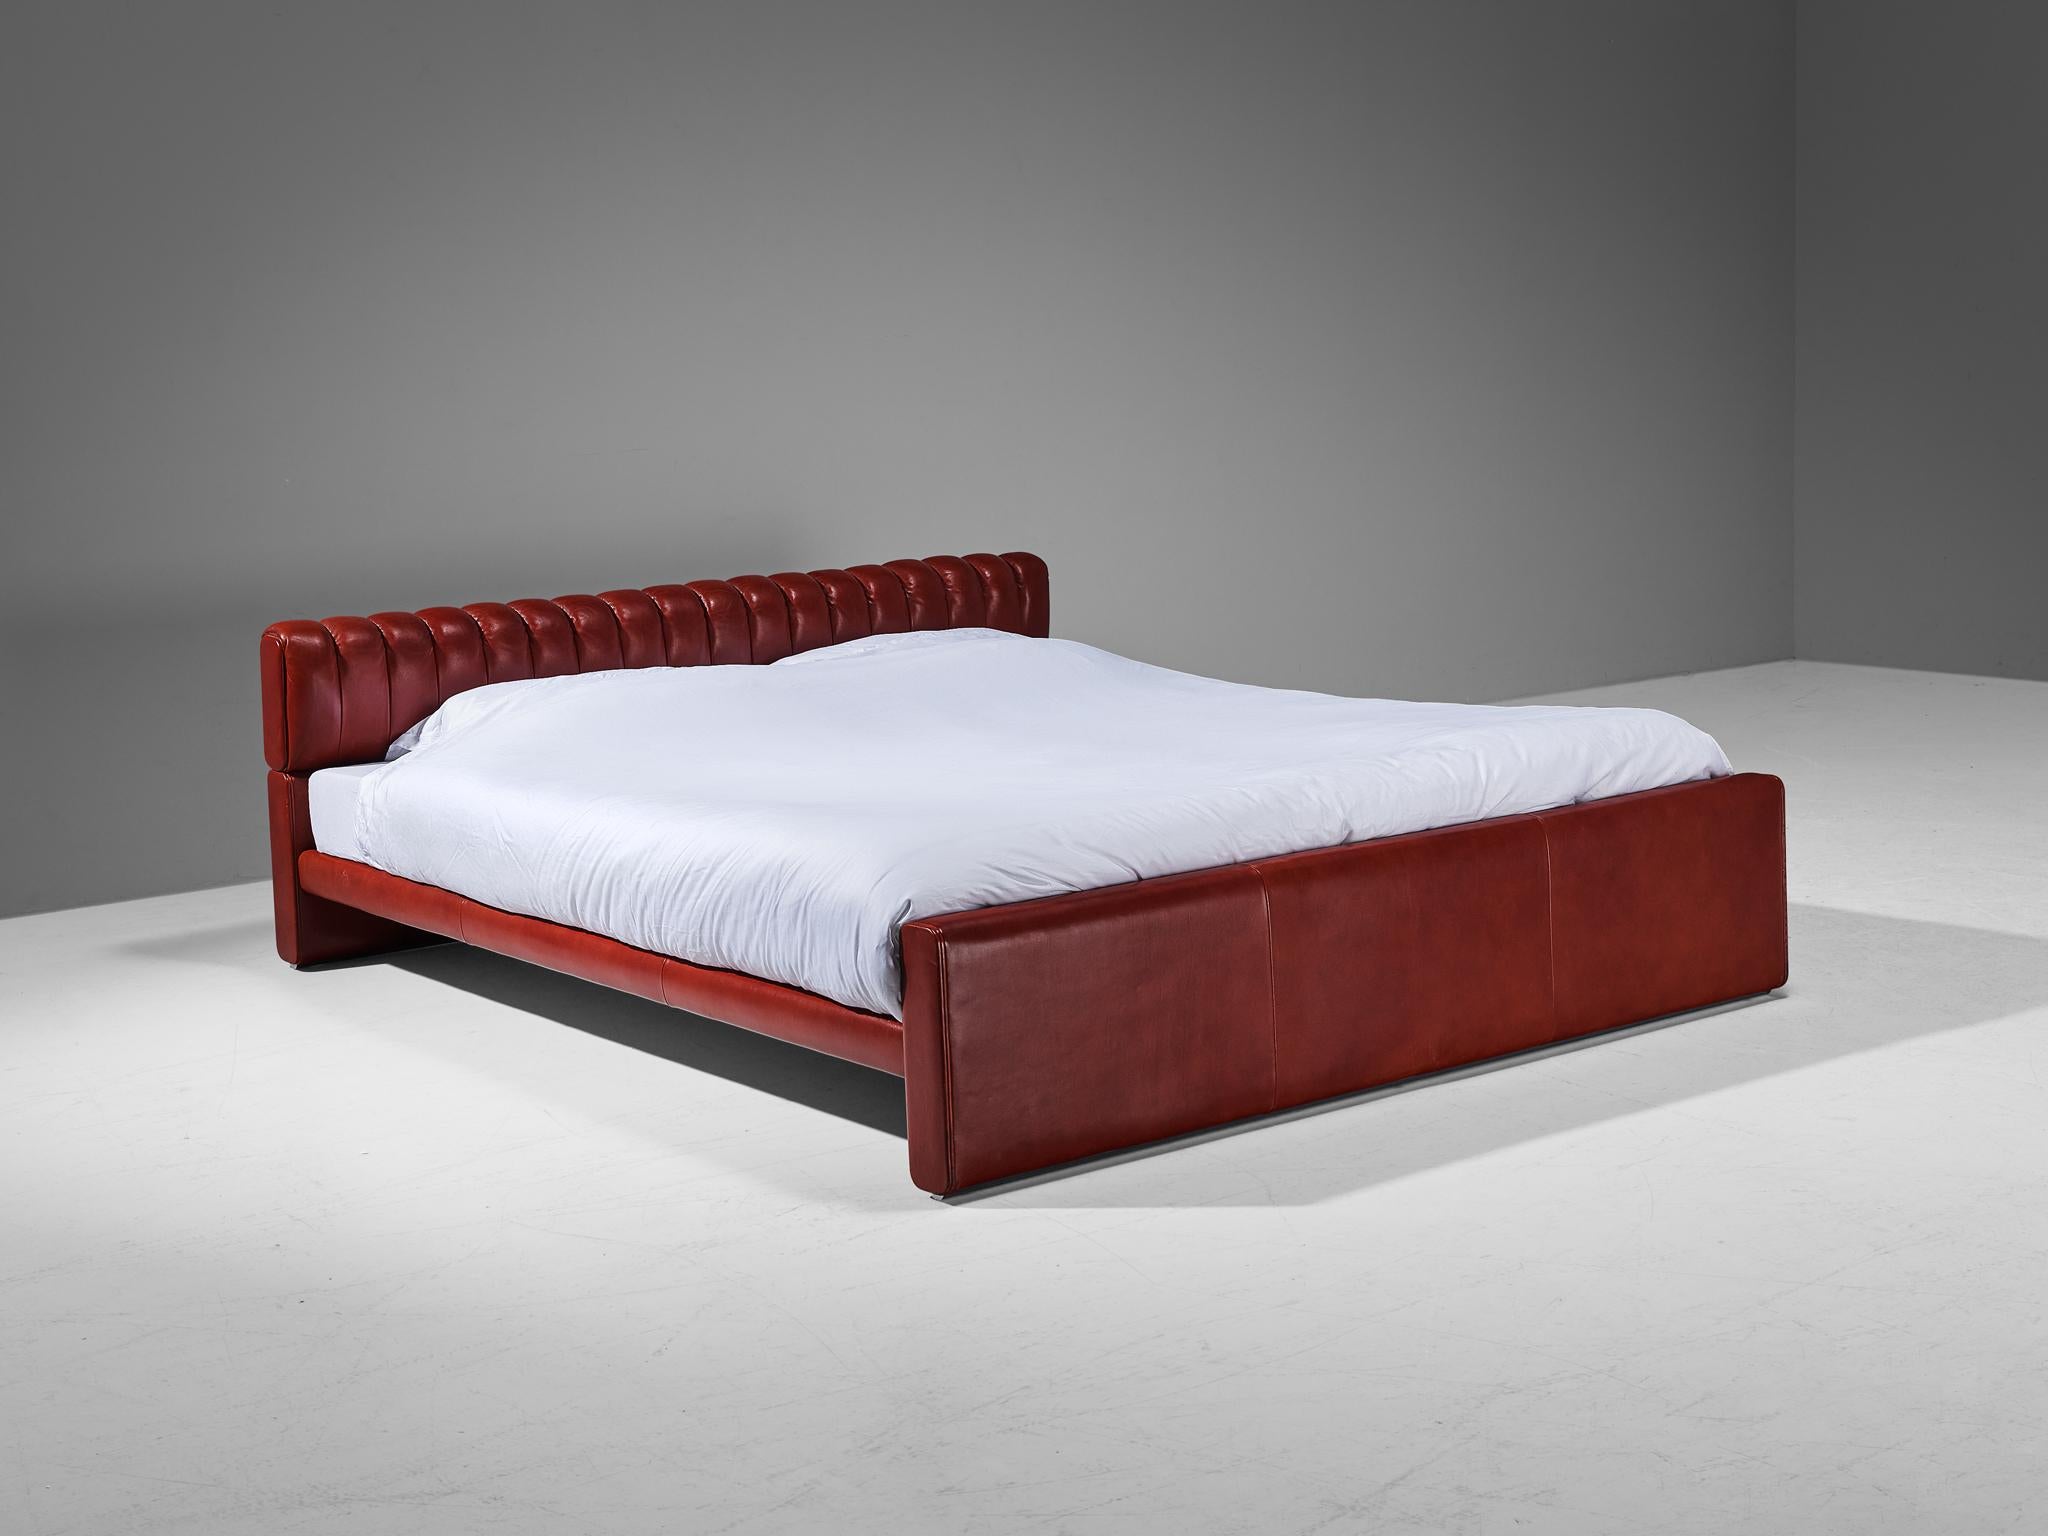 Luigi Massoni für Poltrona Frau, Doppelbett Modell 'Losange', Holz, Leder, Italien, Entwurf 1972

Ein klassisches Doppelbett, entworfen von Luigi Massoni im Jahr 1972. Dieses Bett ist mit einem leuchtend roten Leder bezogen, das sofort ins Auge